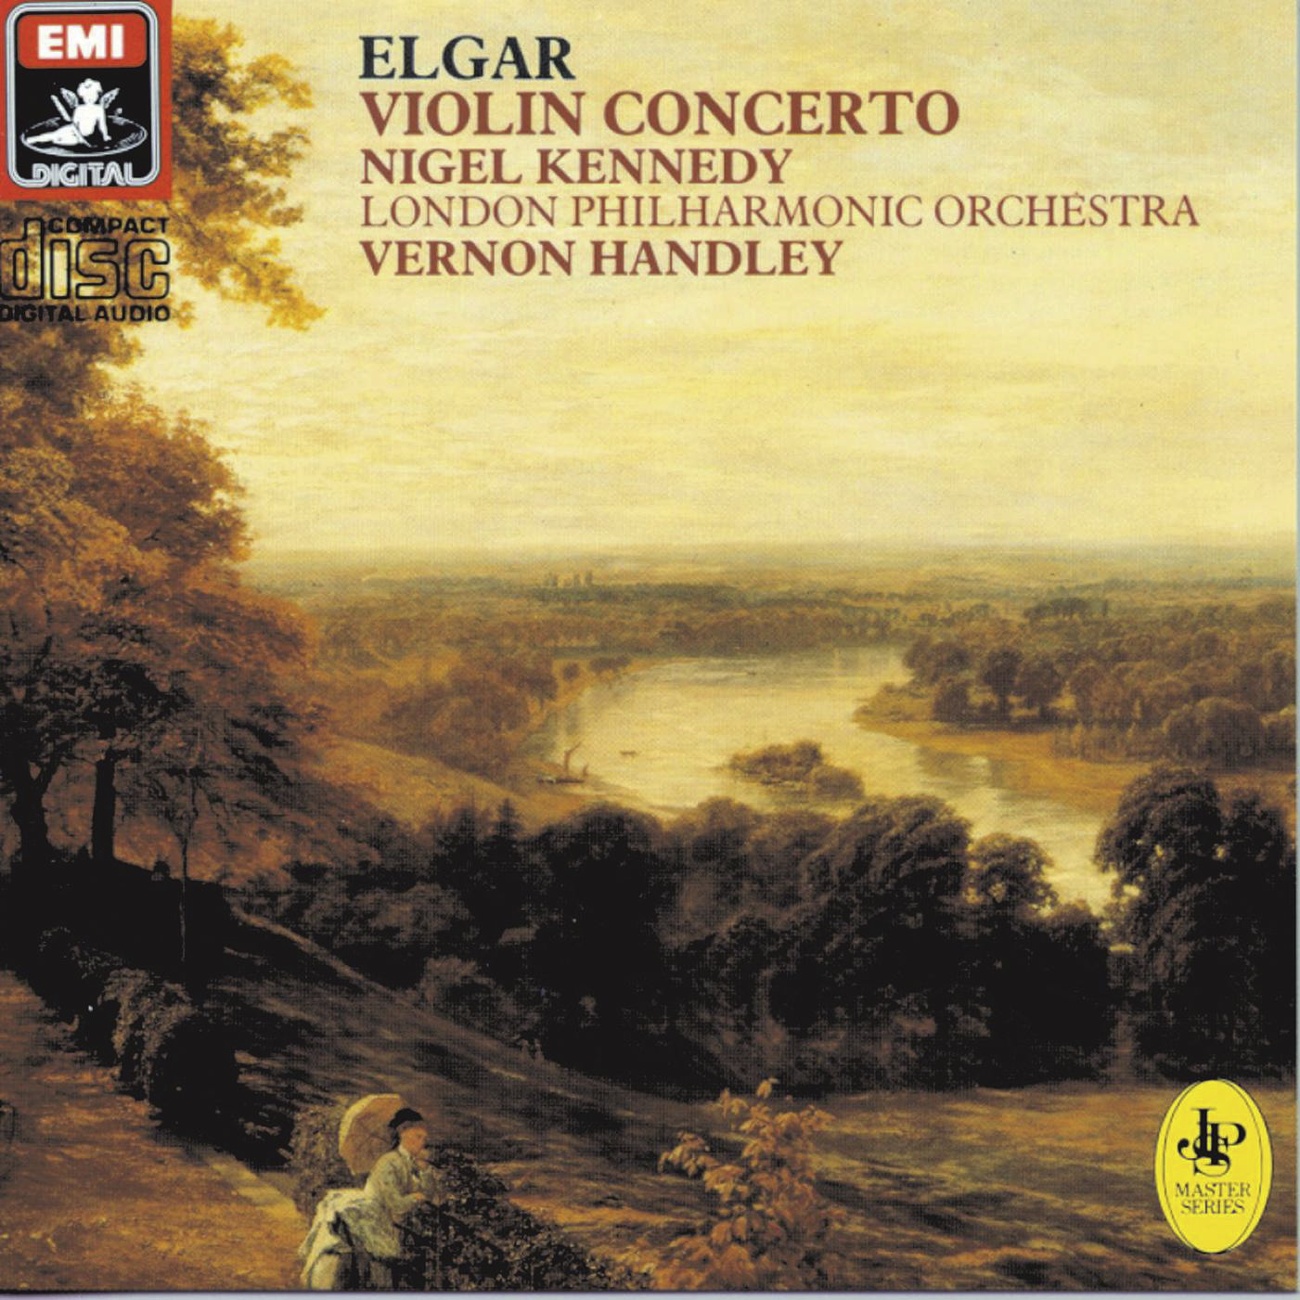 Violin Concerto in B minor Op. 61: III. Allegro molto - Cadenza (accompagnata:  Lento) - Allegro molto (Tempo I)